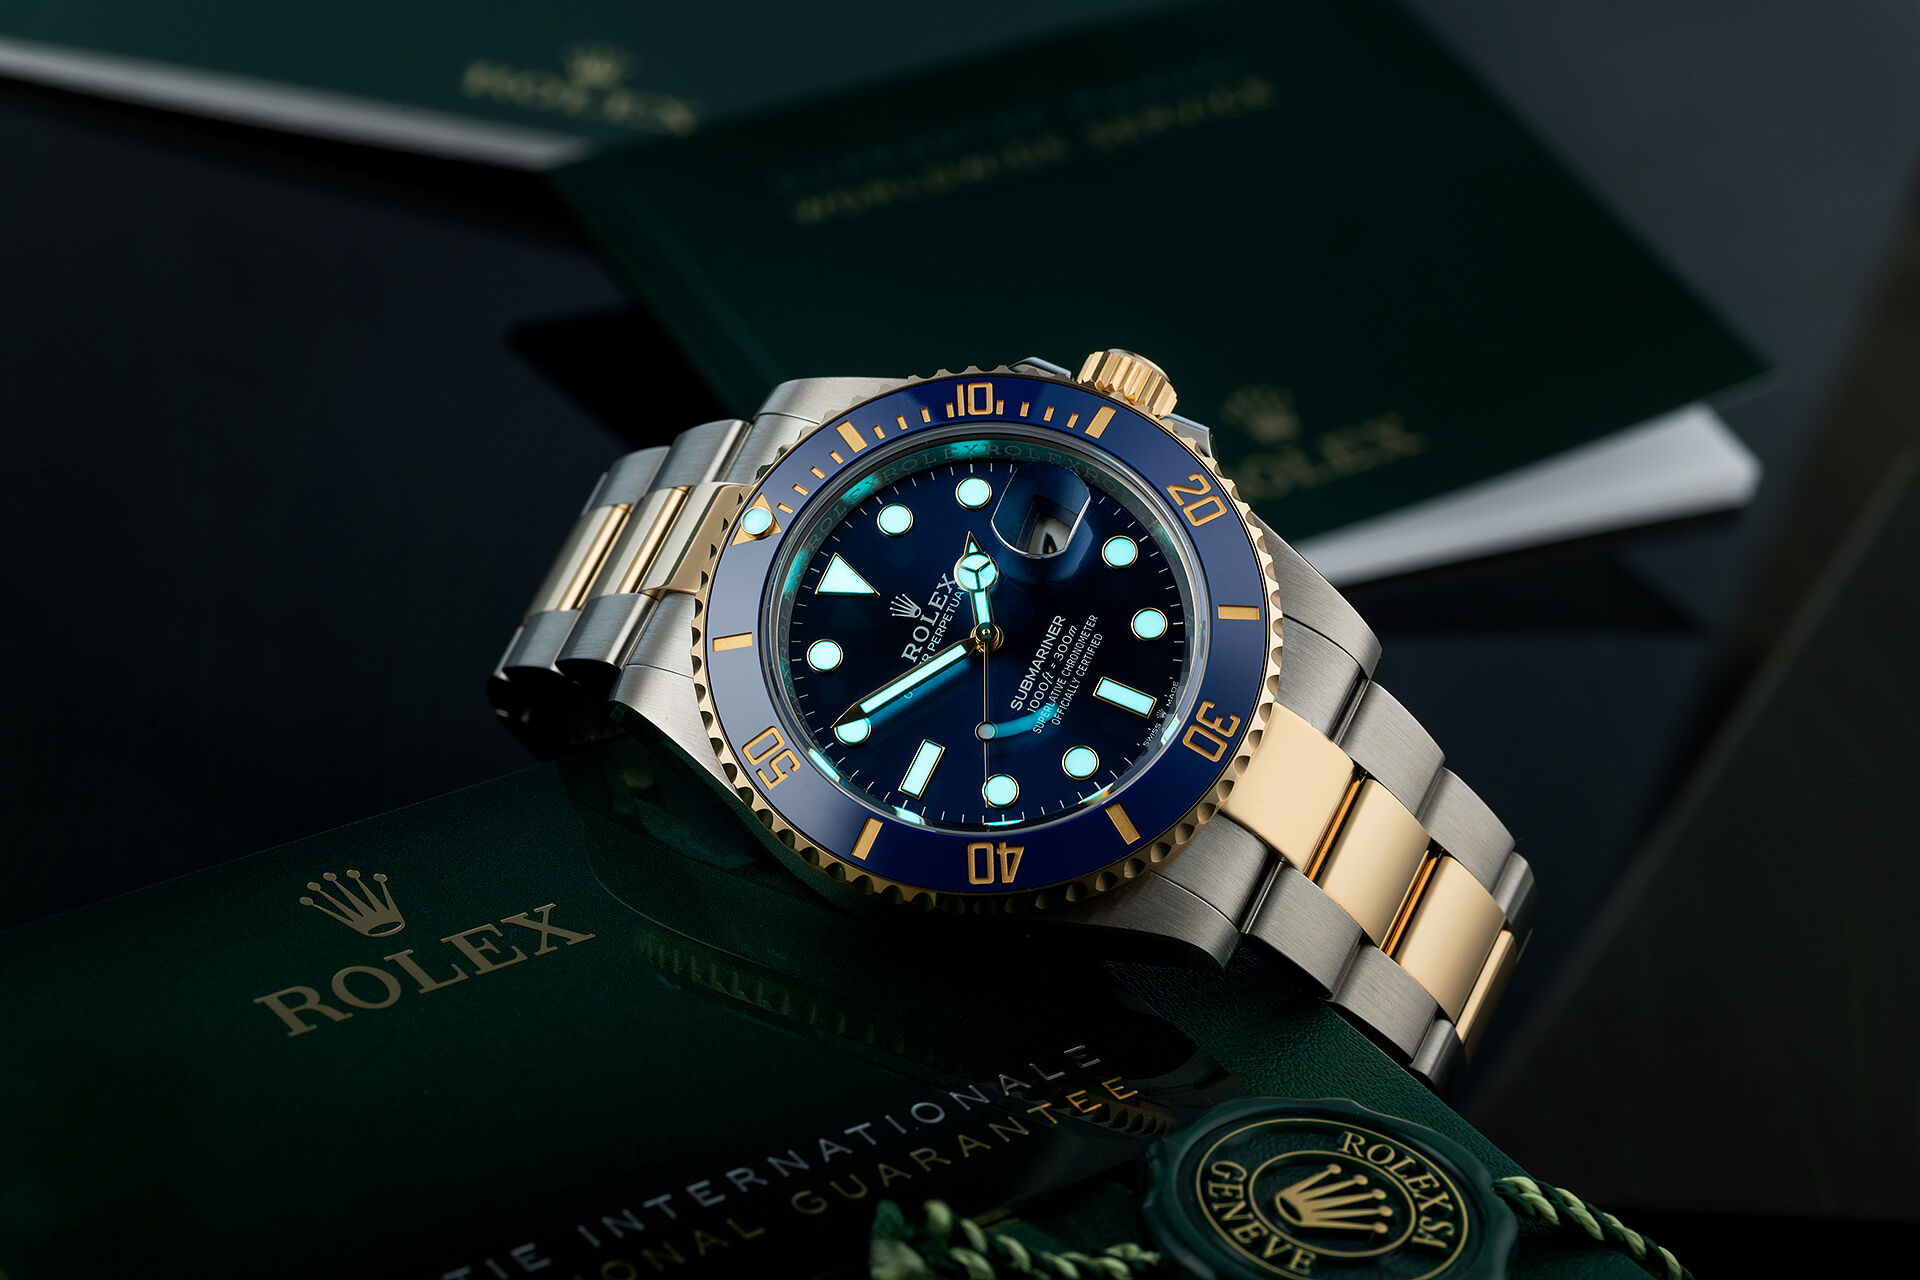 ref 126613LB | 5 Year Rolex Warranty | Rolex Submariner Date